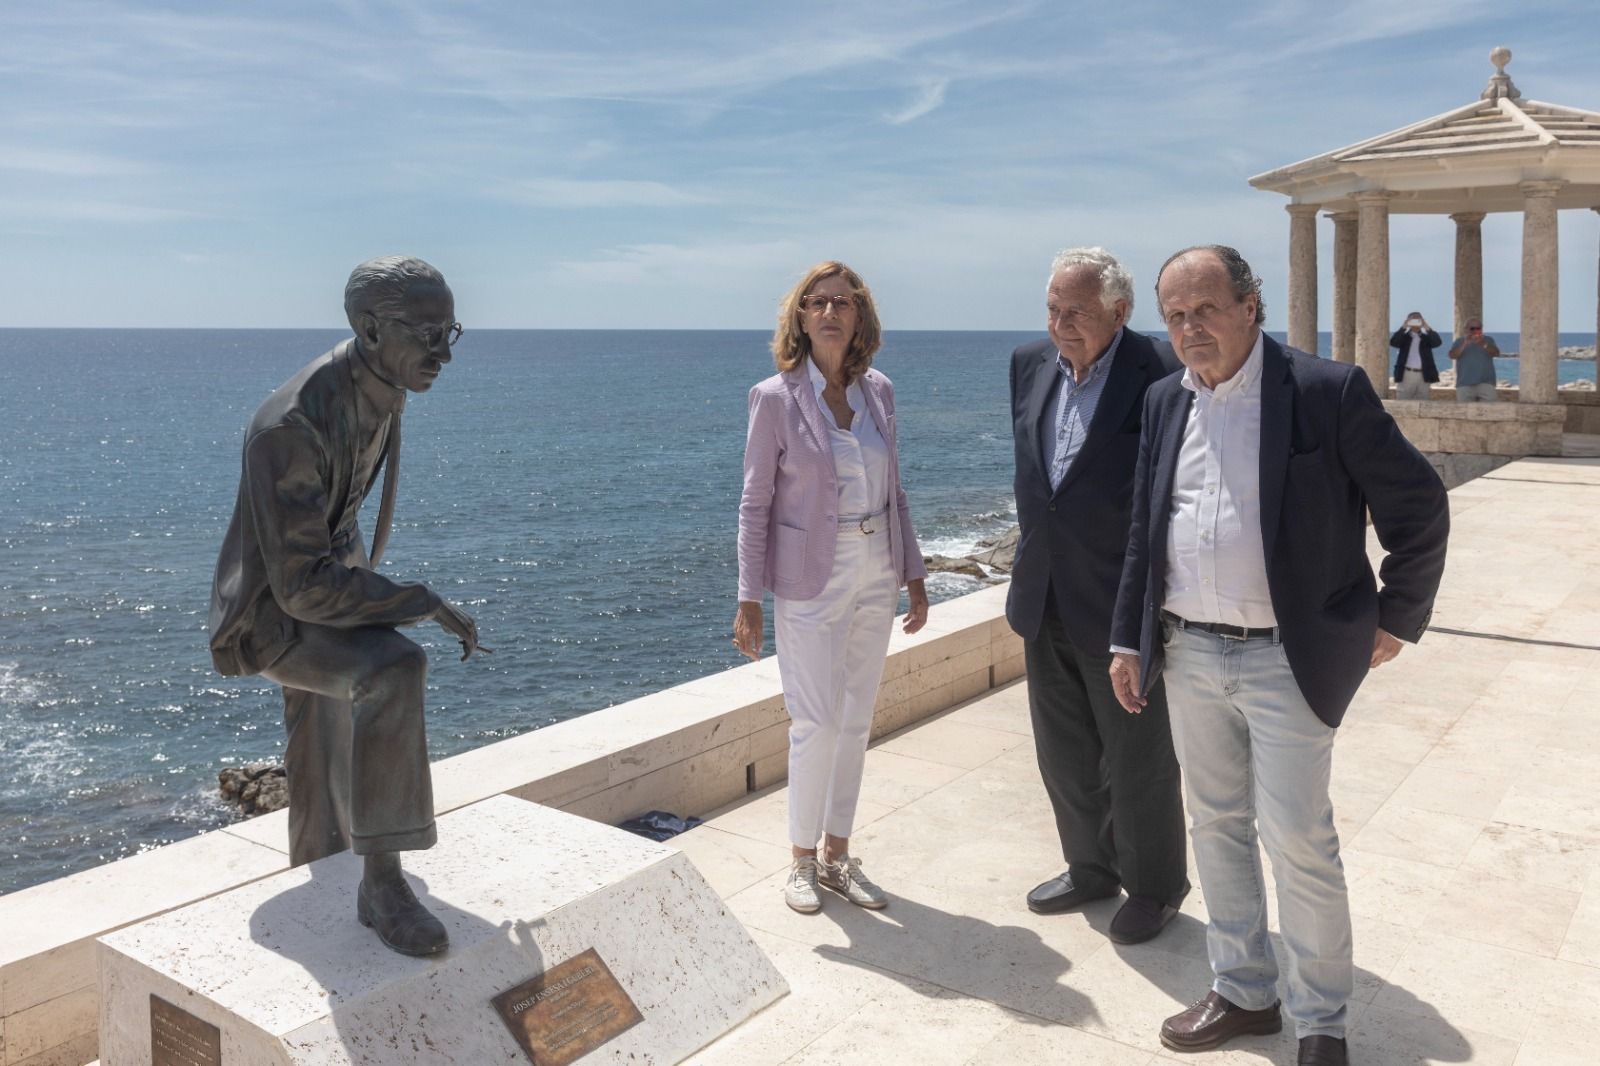 S'Agaró inicia la celebració del seu centenari amb la inauguració de l'escultura d'homenatge Josep Ensesa